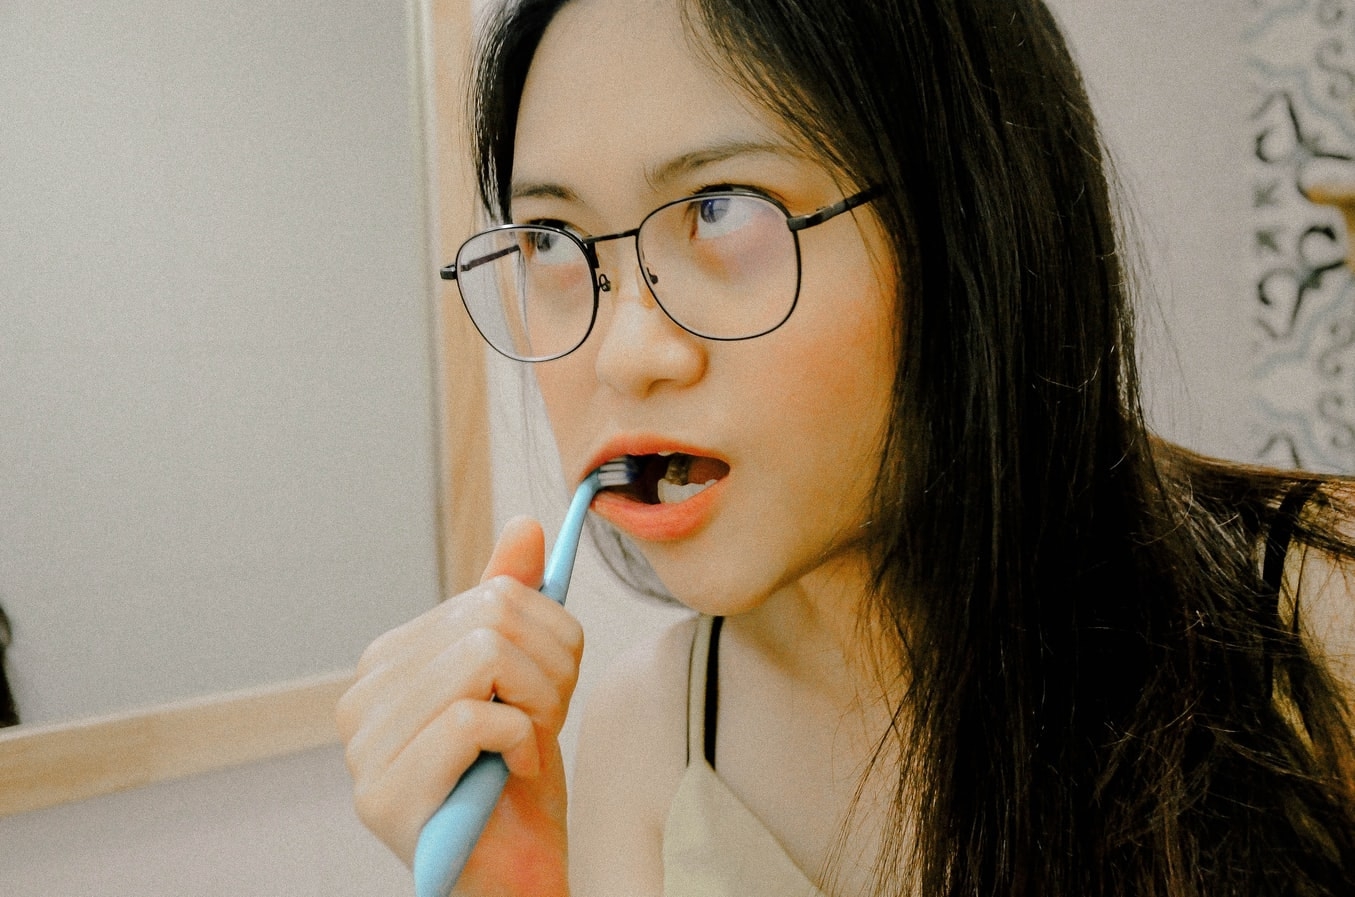 Người phụ nữ bị sâu cả hàm răng, mảng bám dày đến mức nha sĩ cũng sửng sốt chỉ vì 1 sai lầm khi đánh răng - Ảnh 2.